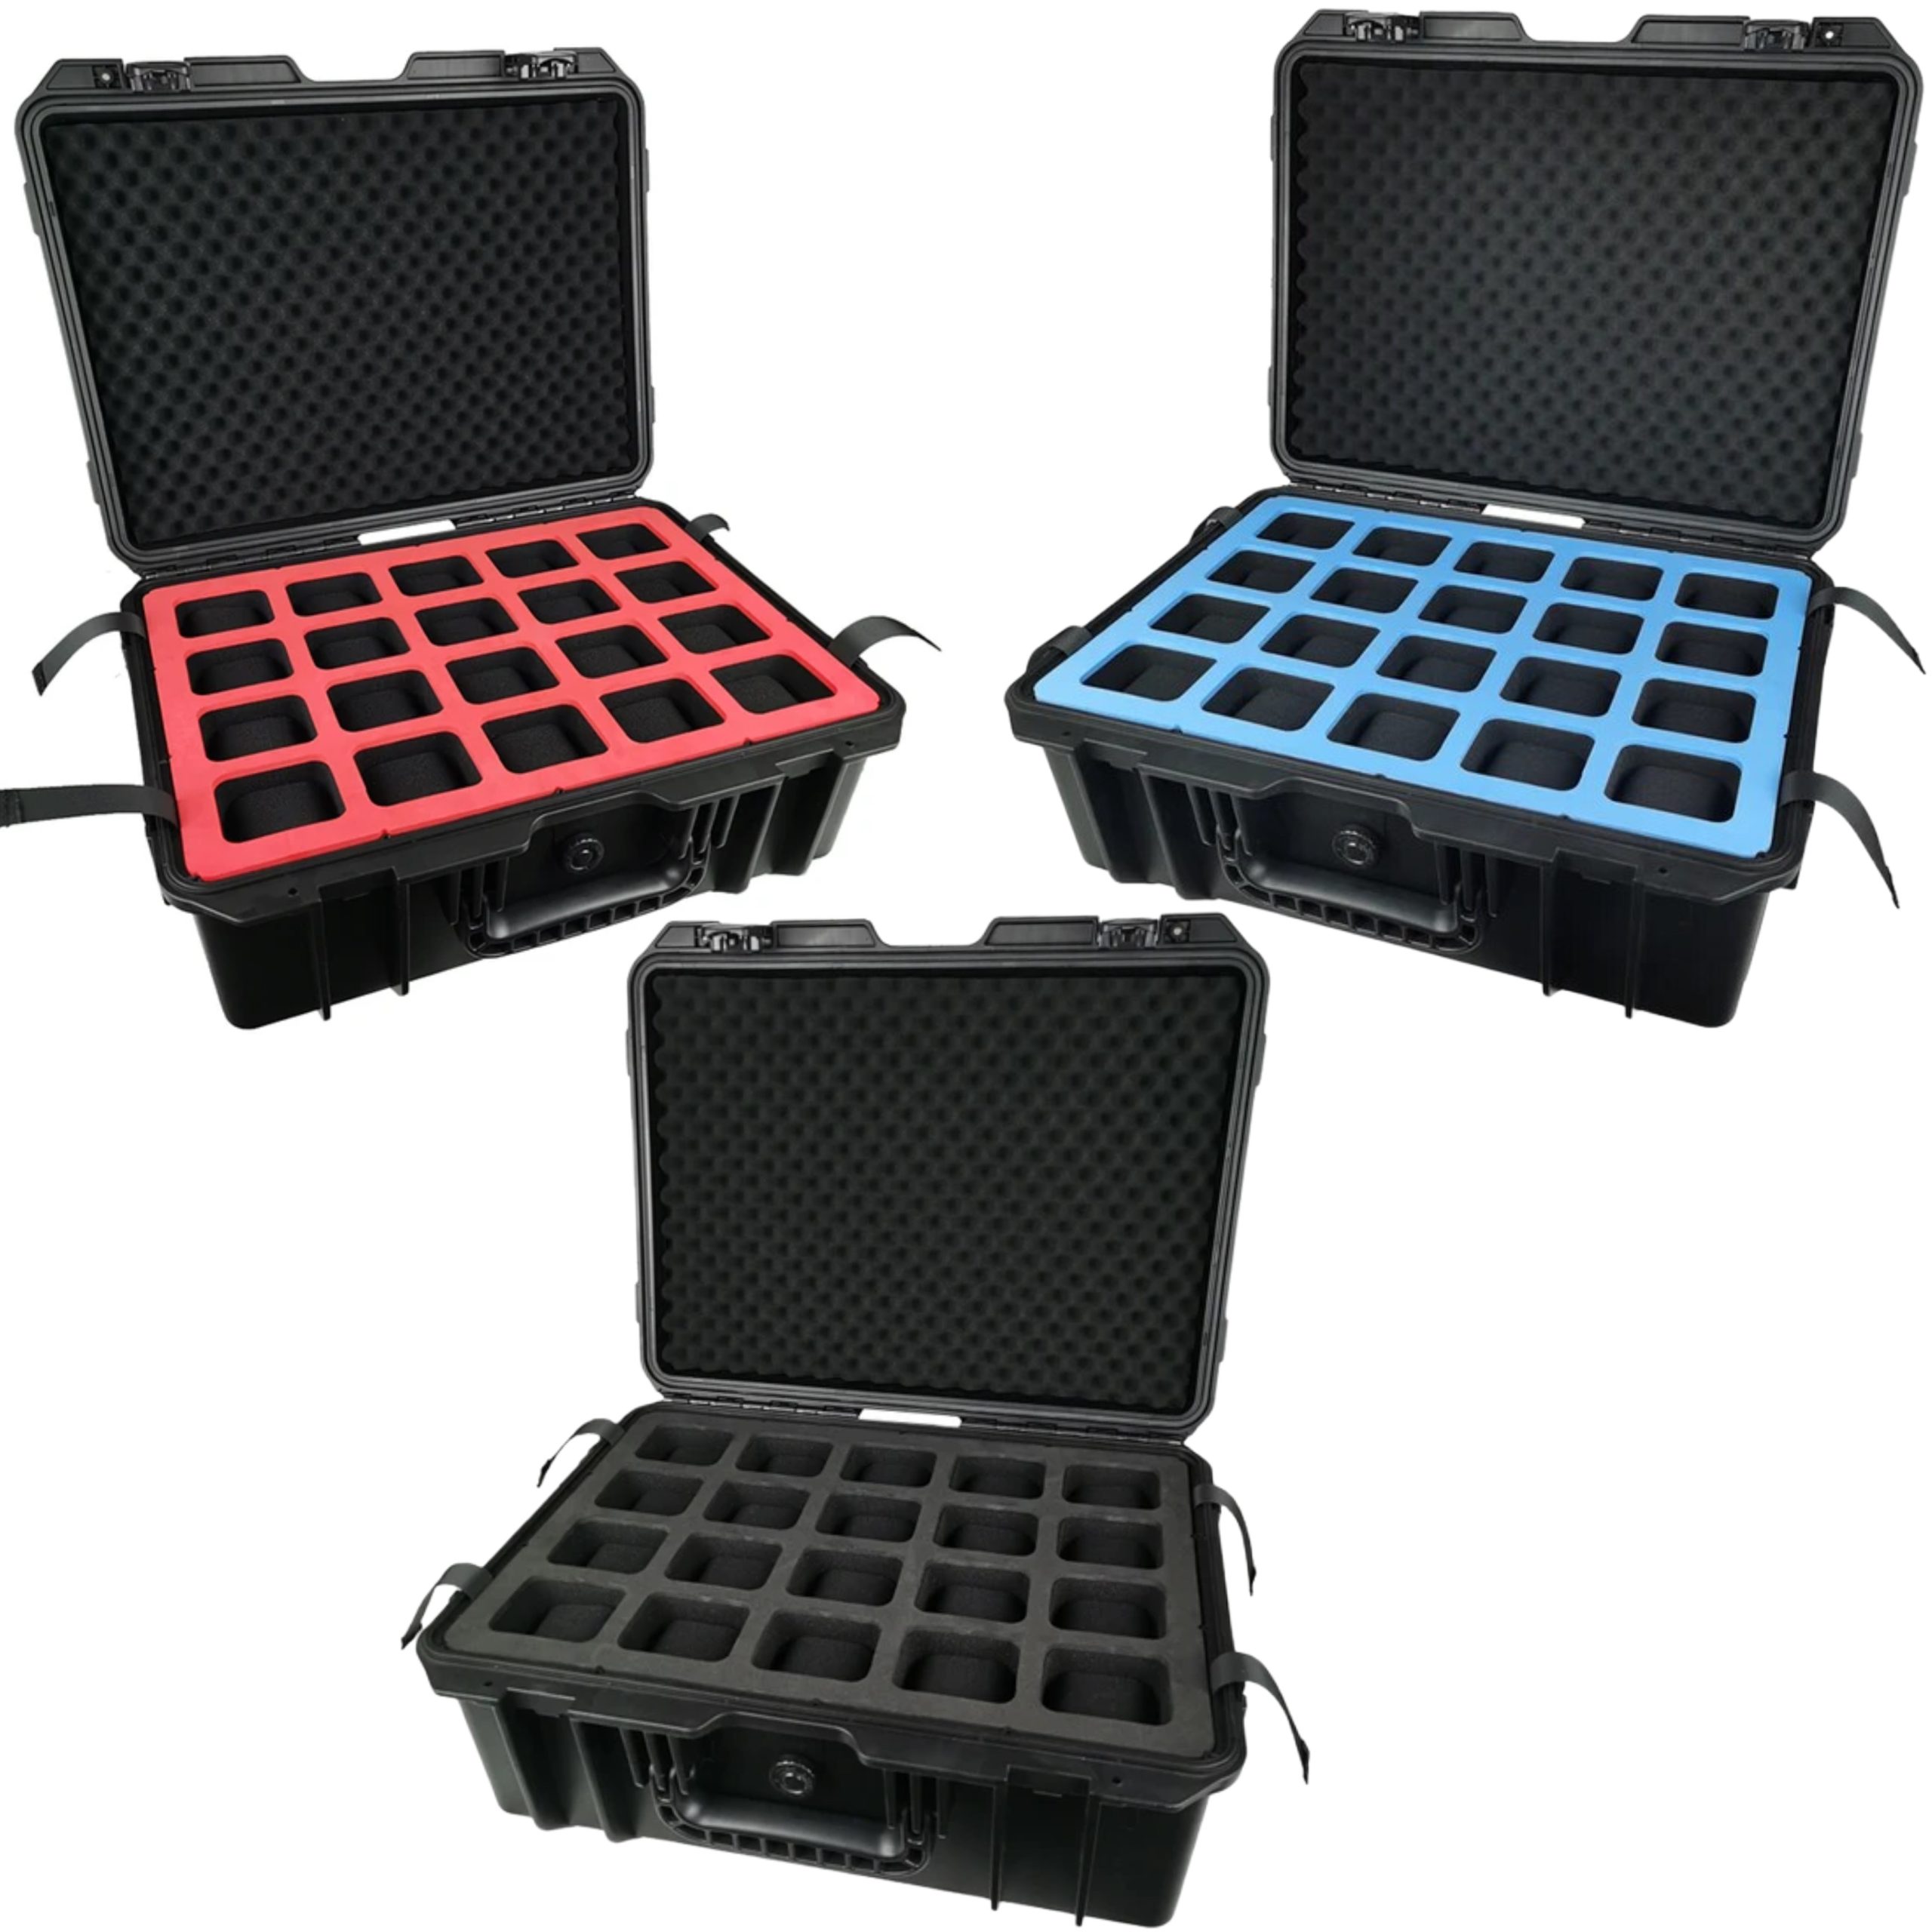 Watch Box Case Plastic Waterproof 40 Slot